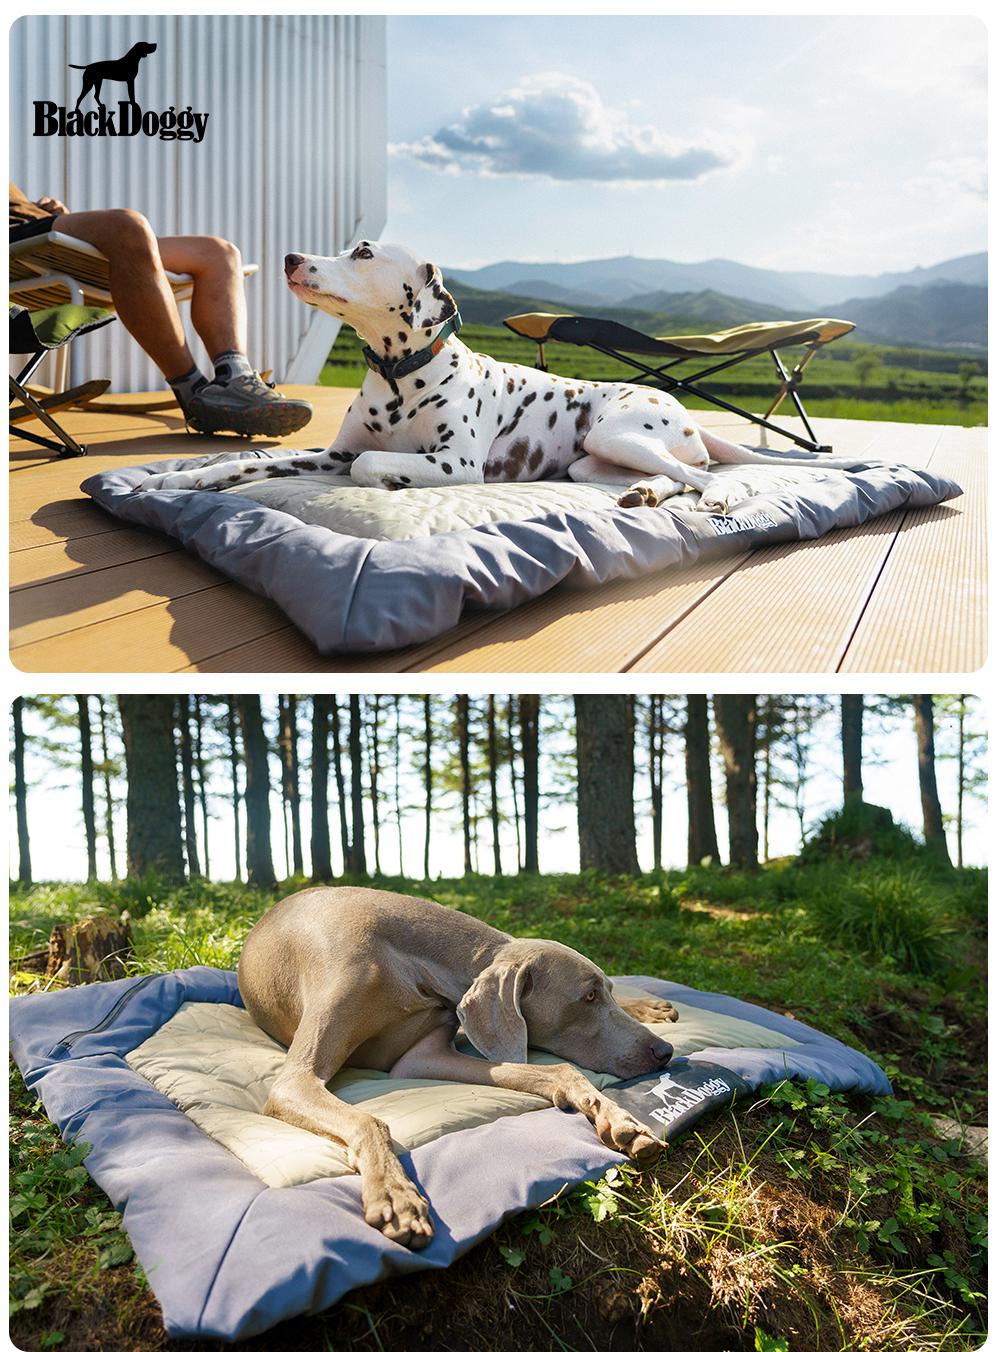 Honden Campingbed voor buiten - Waterdicht - Oprolbaar - Donkerblauw - Maat L